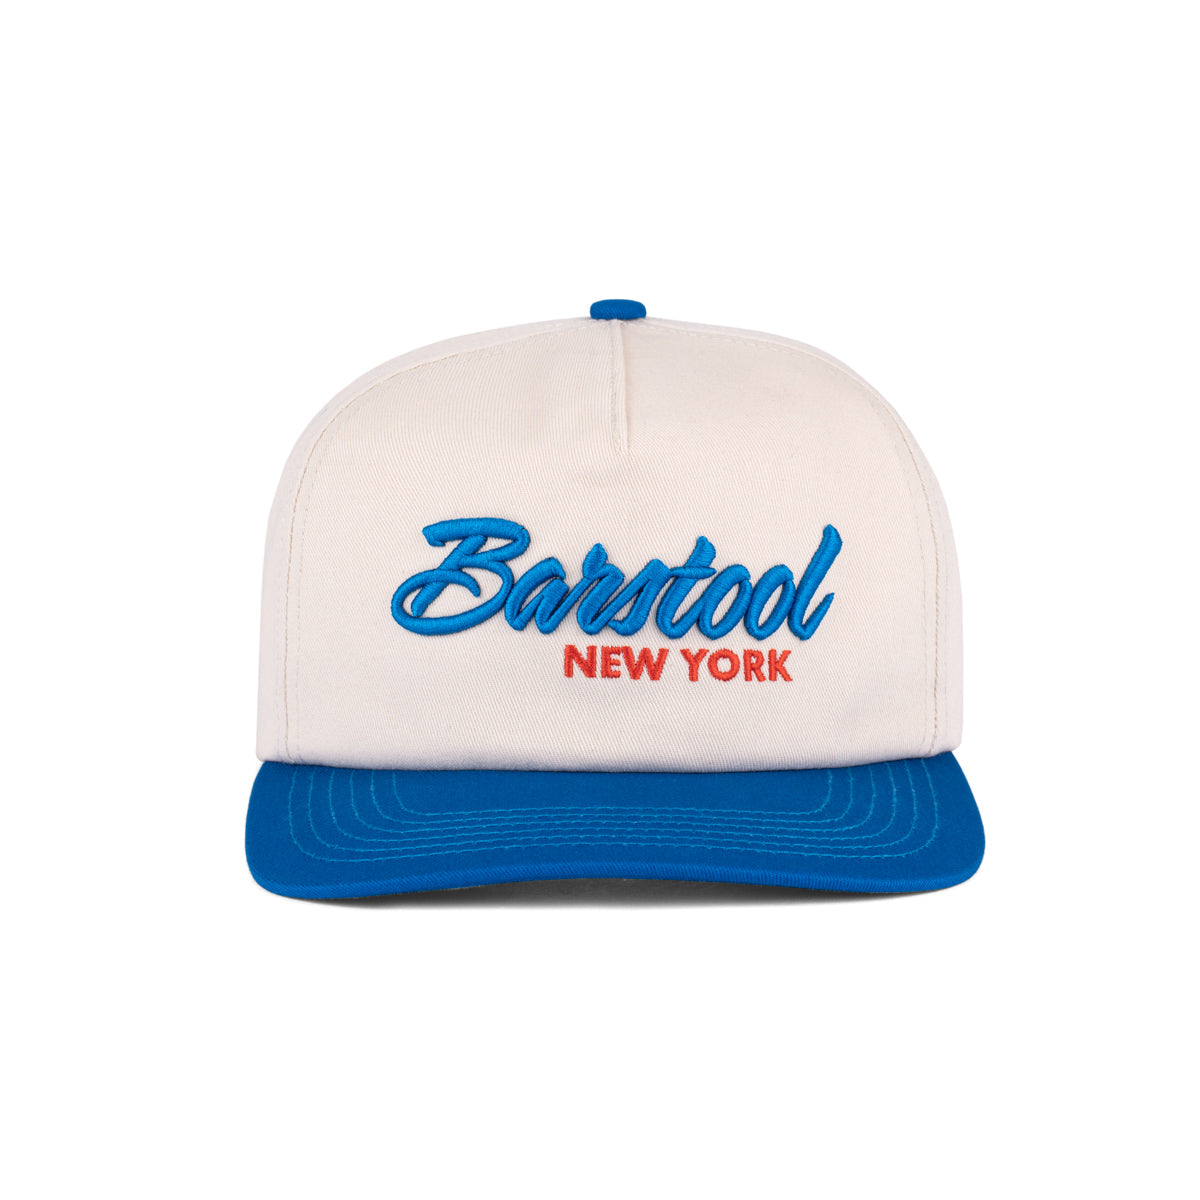 Barstool NY Retro Snapback Hat-Hats-Barstool Sports-Cream-One Size-Barstool Sports